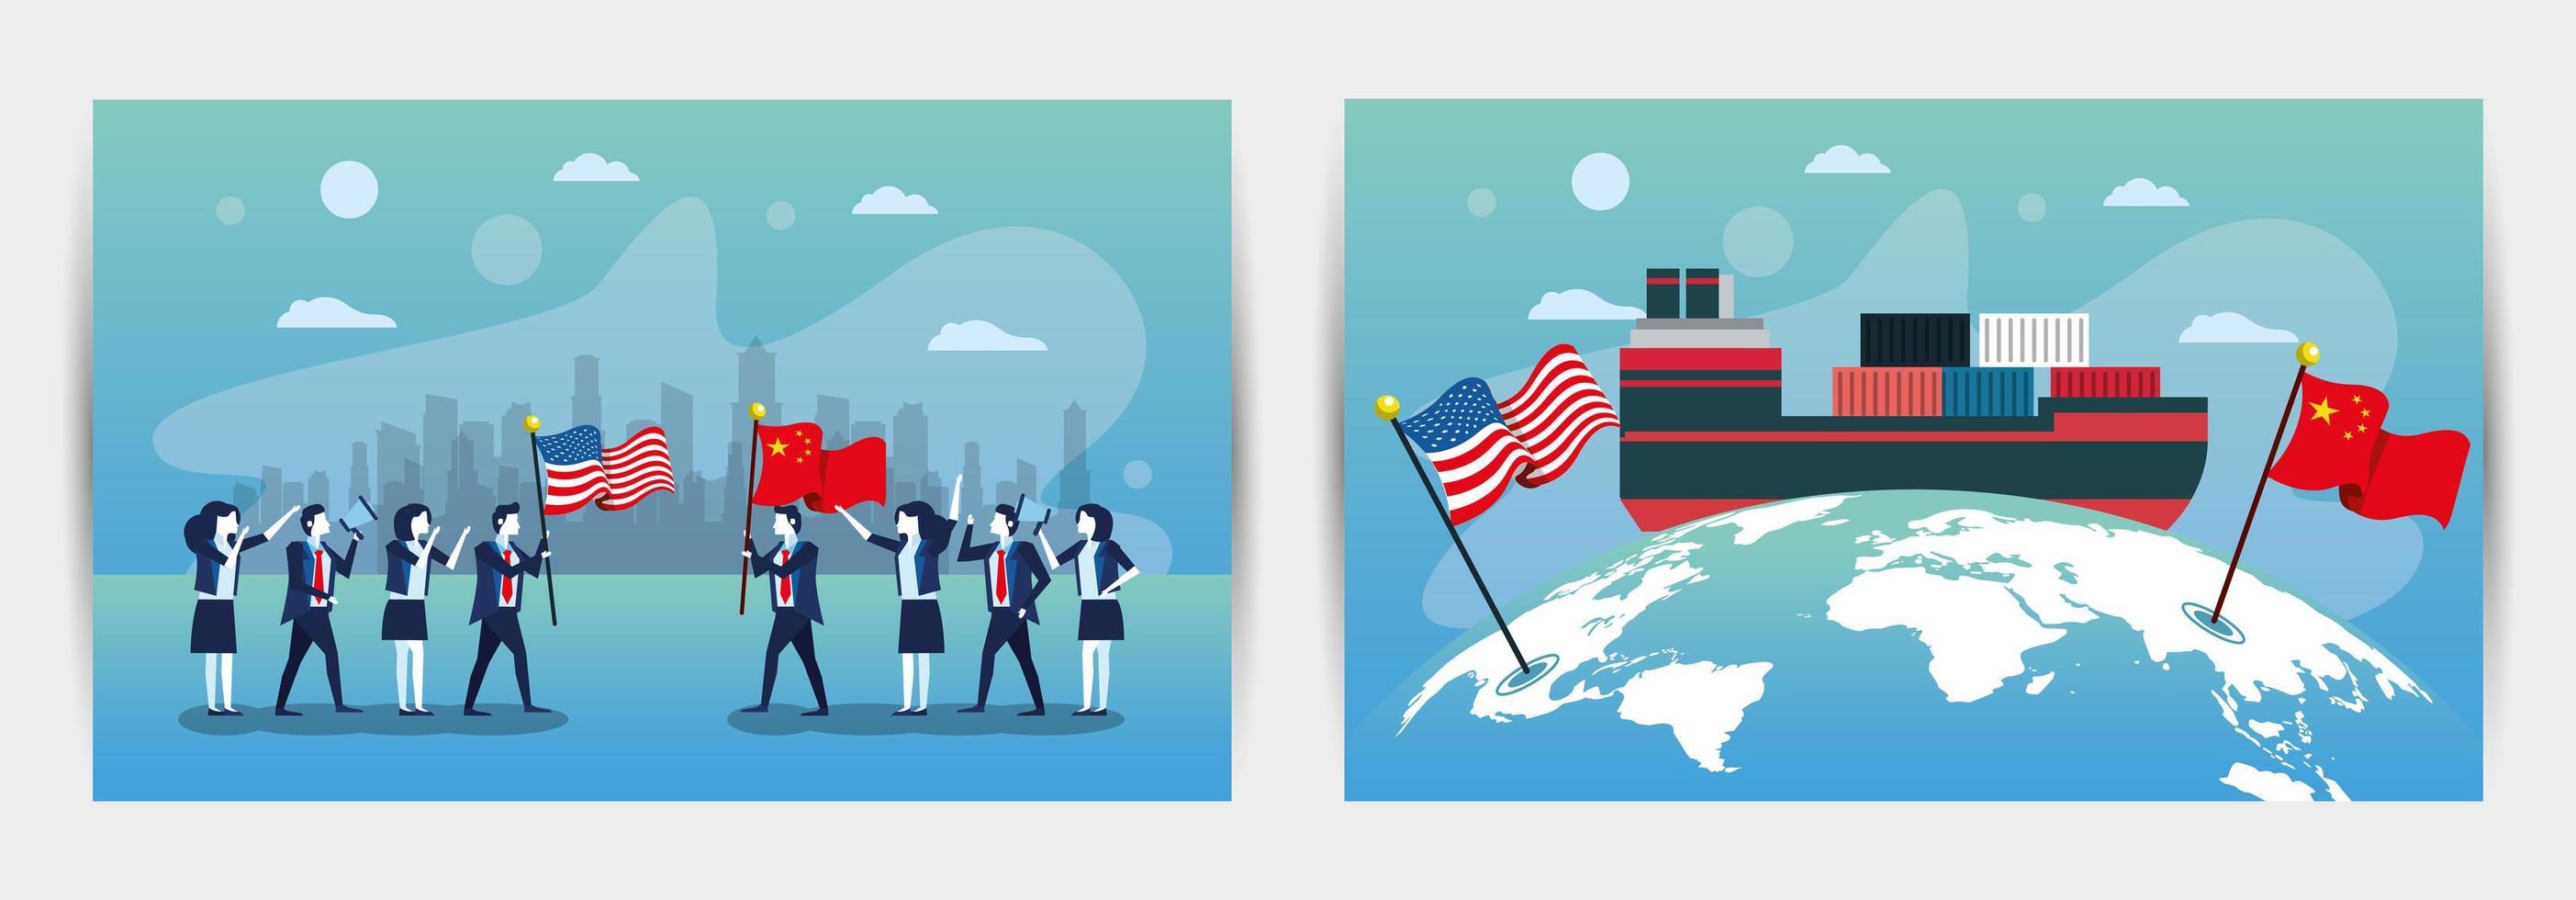 paquete de gente de negocios con banderas de estados unidos y china vector